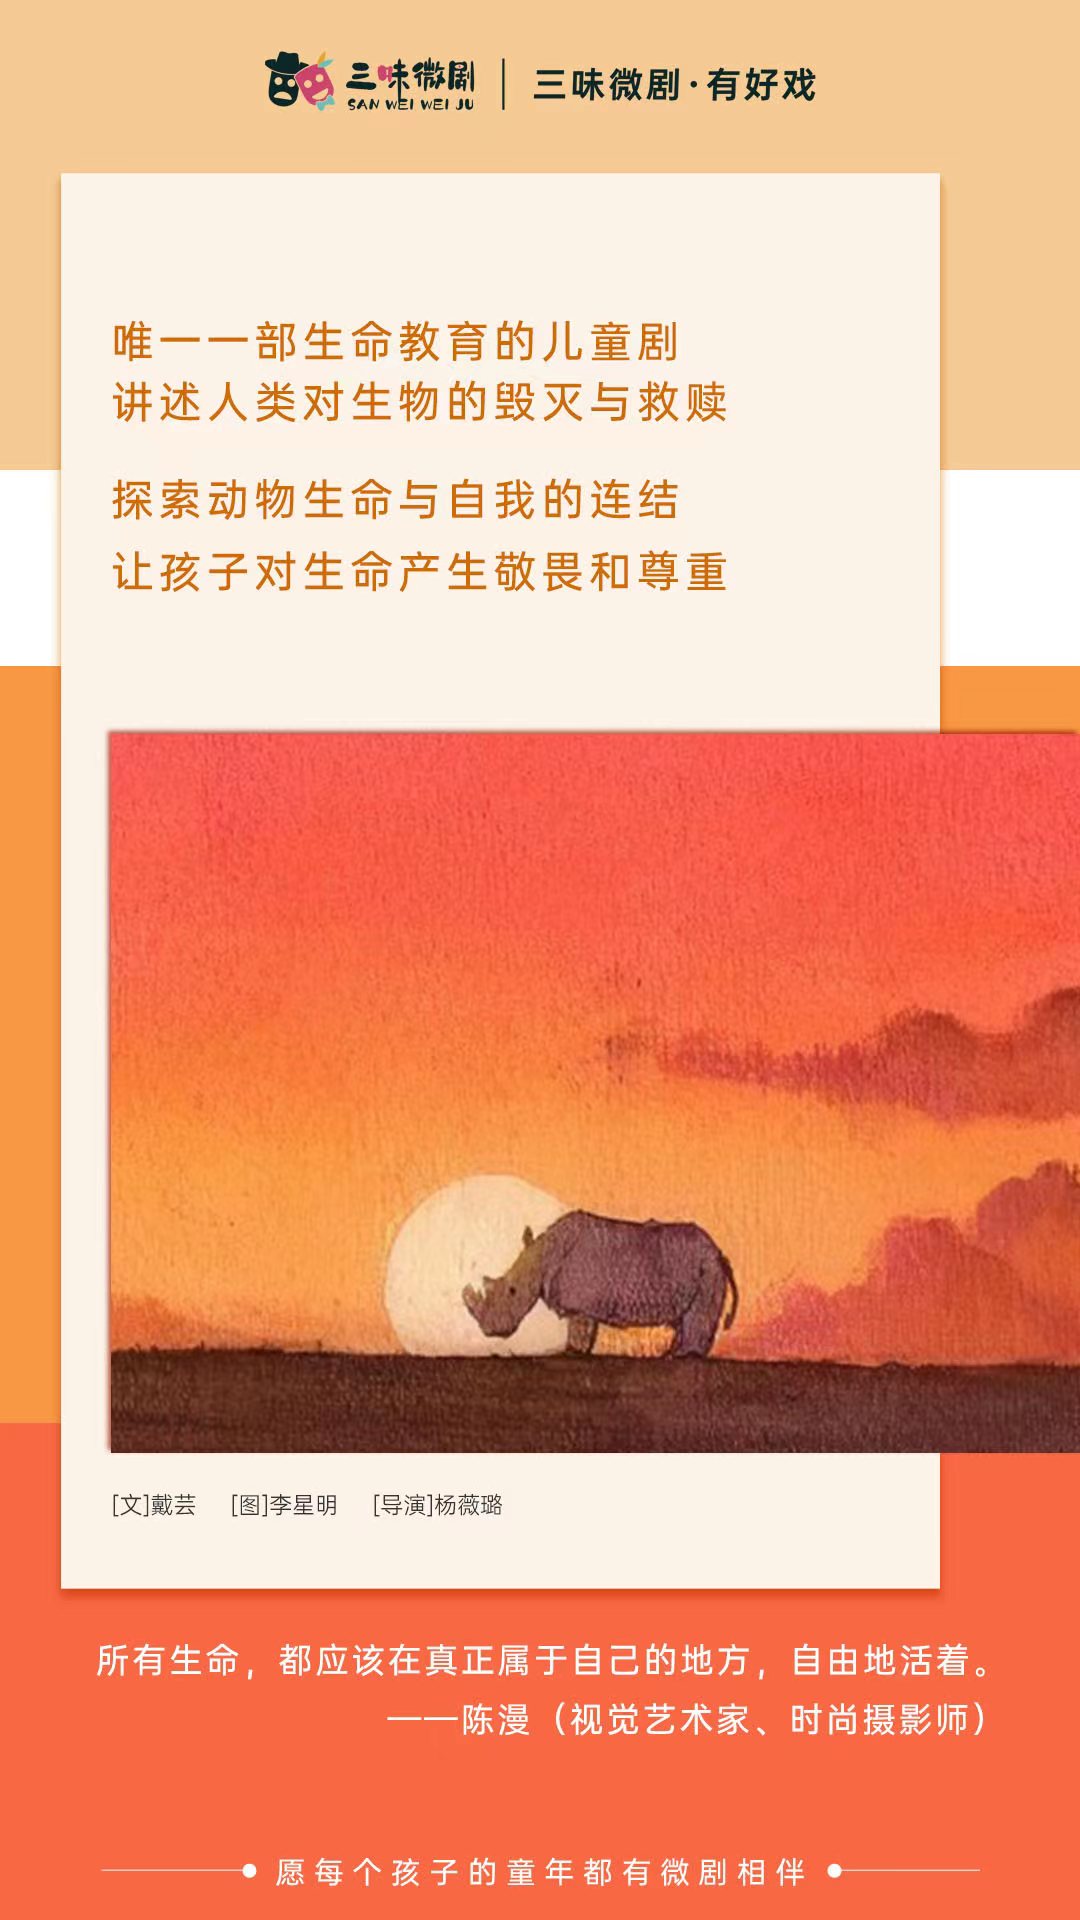 【上海站】“周末小剧场”系列绘本儿童剧《苏丹的犀角》